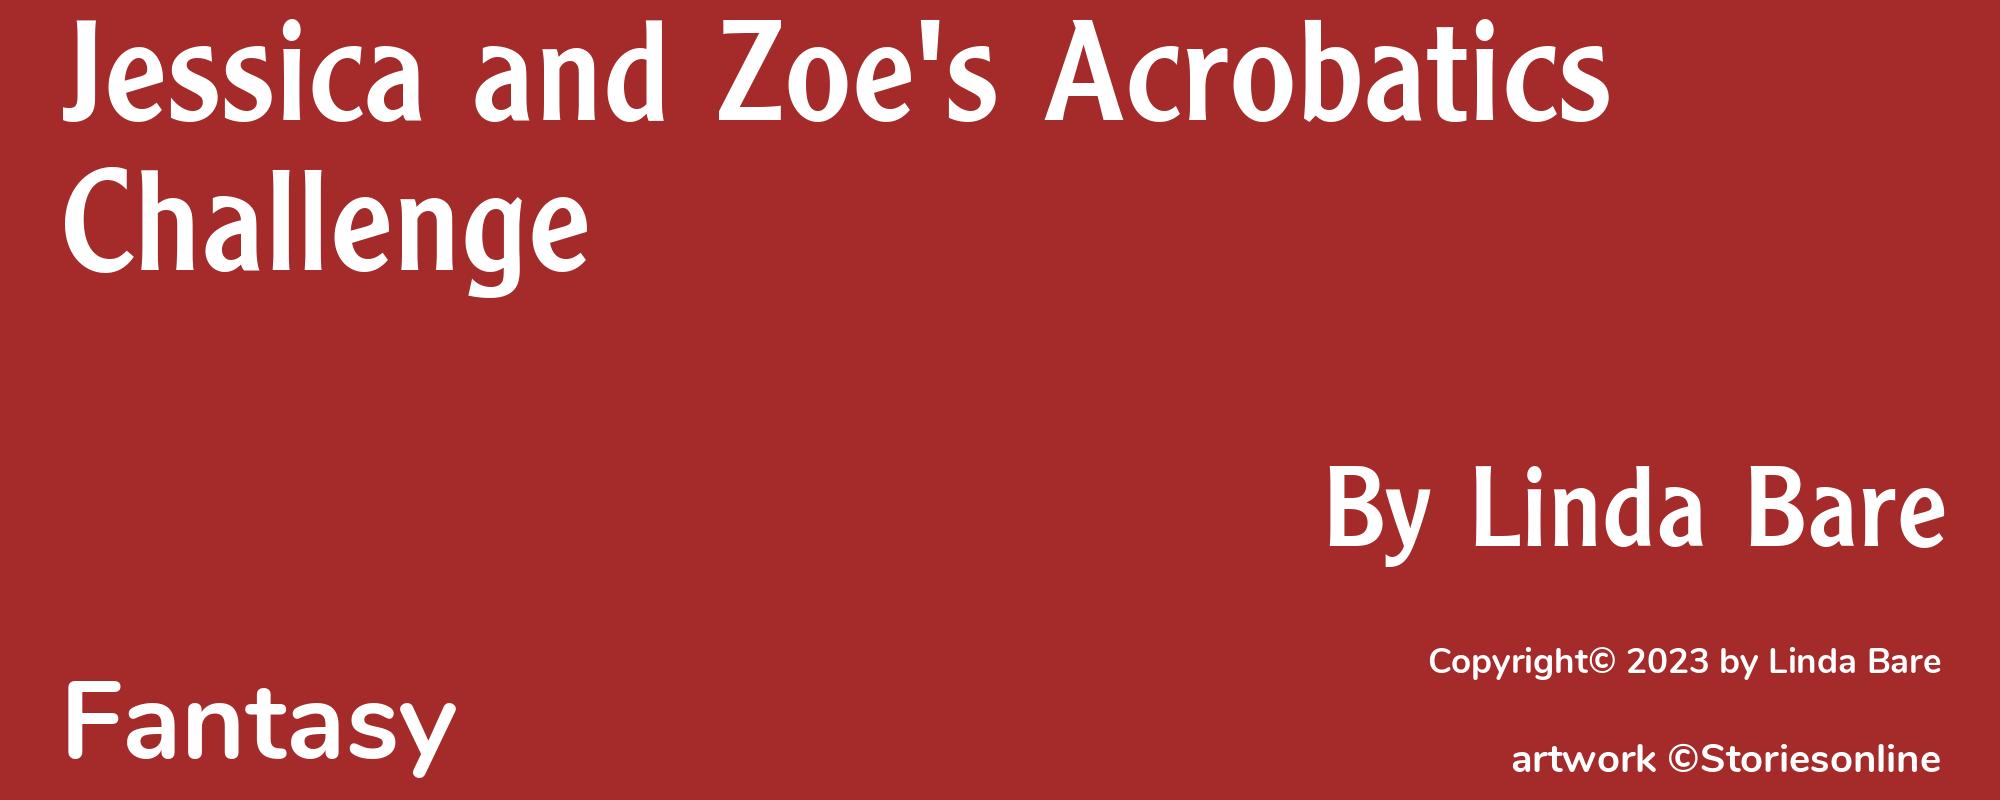 Jessica and Zoe's Acrobatics Challenge - Cover